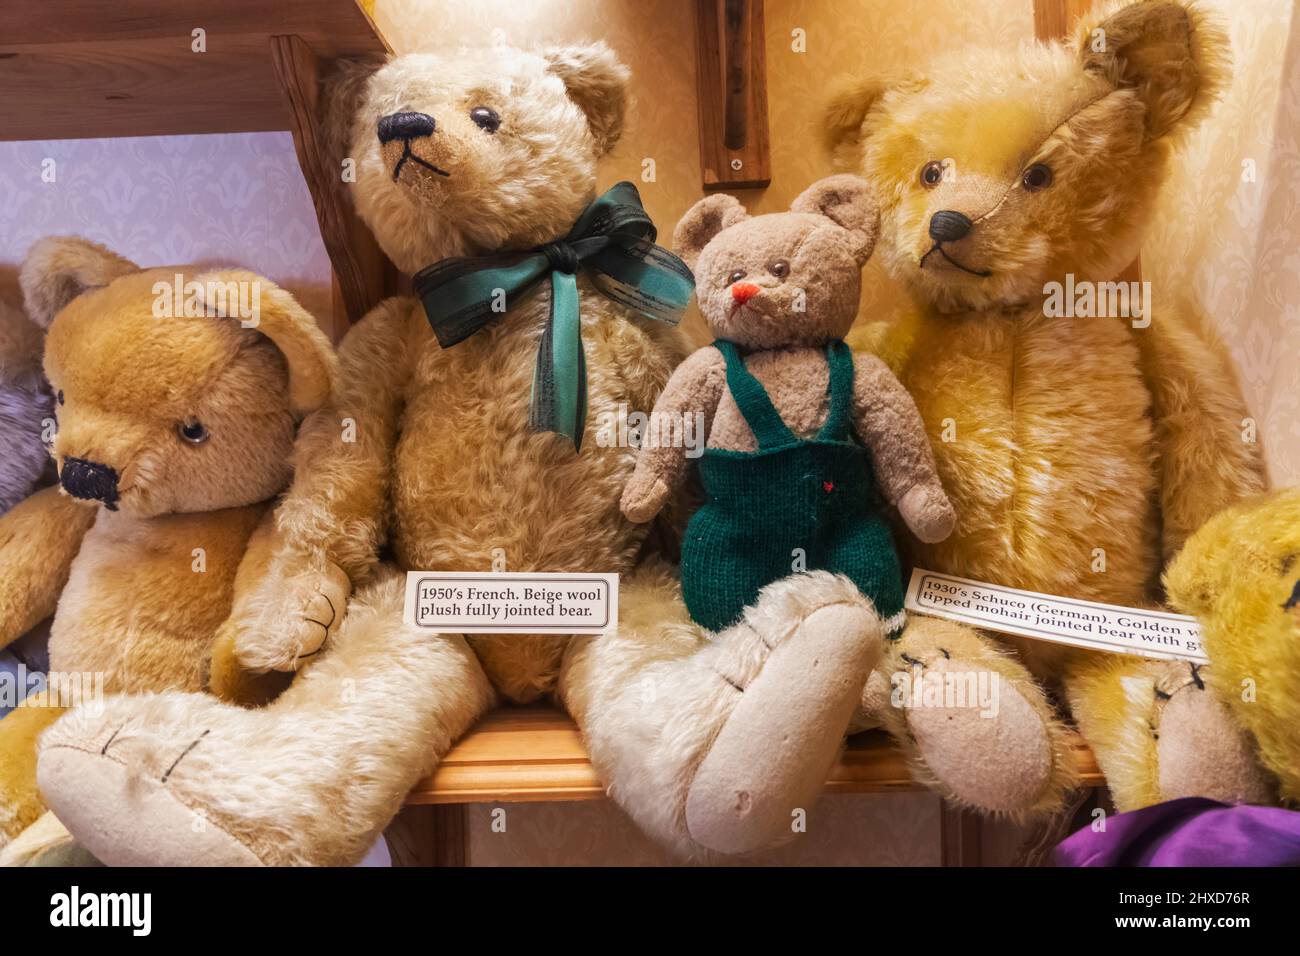 Inghilterra, Dorset, Dorchester, il Teddy Bear Museum, mostra di orsi Teddy continentali d'epoca Foto Stock